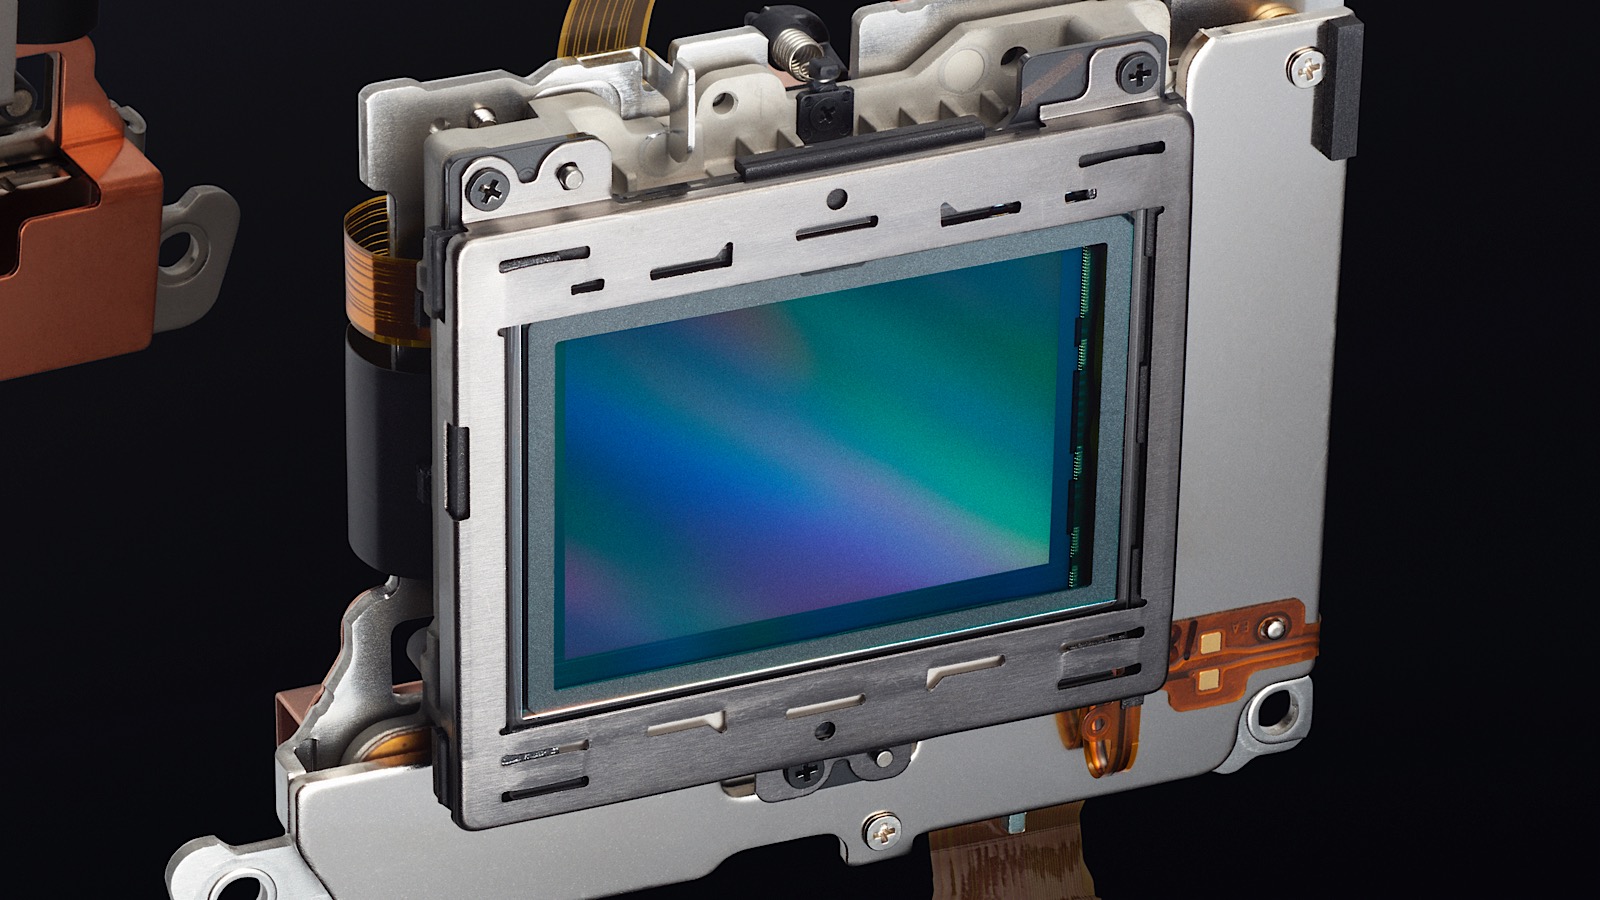 The full-frame sensor of the Nikon Z7